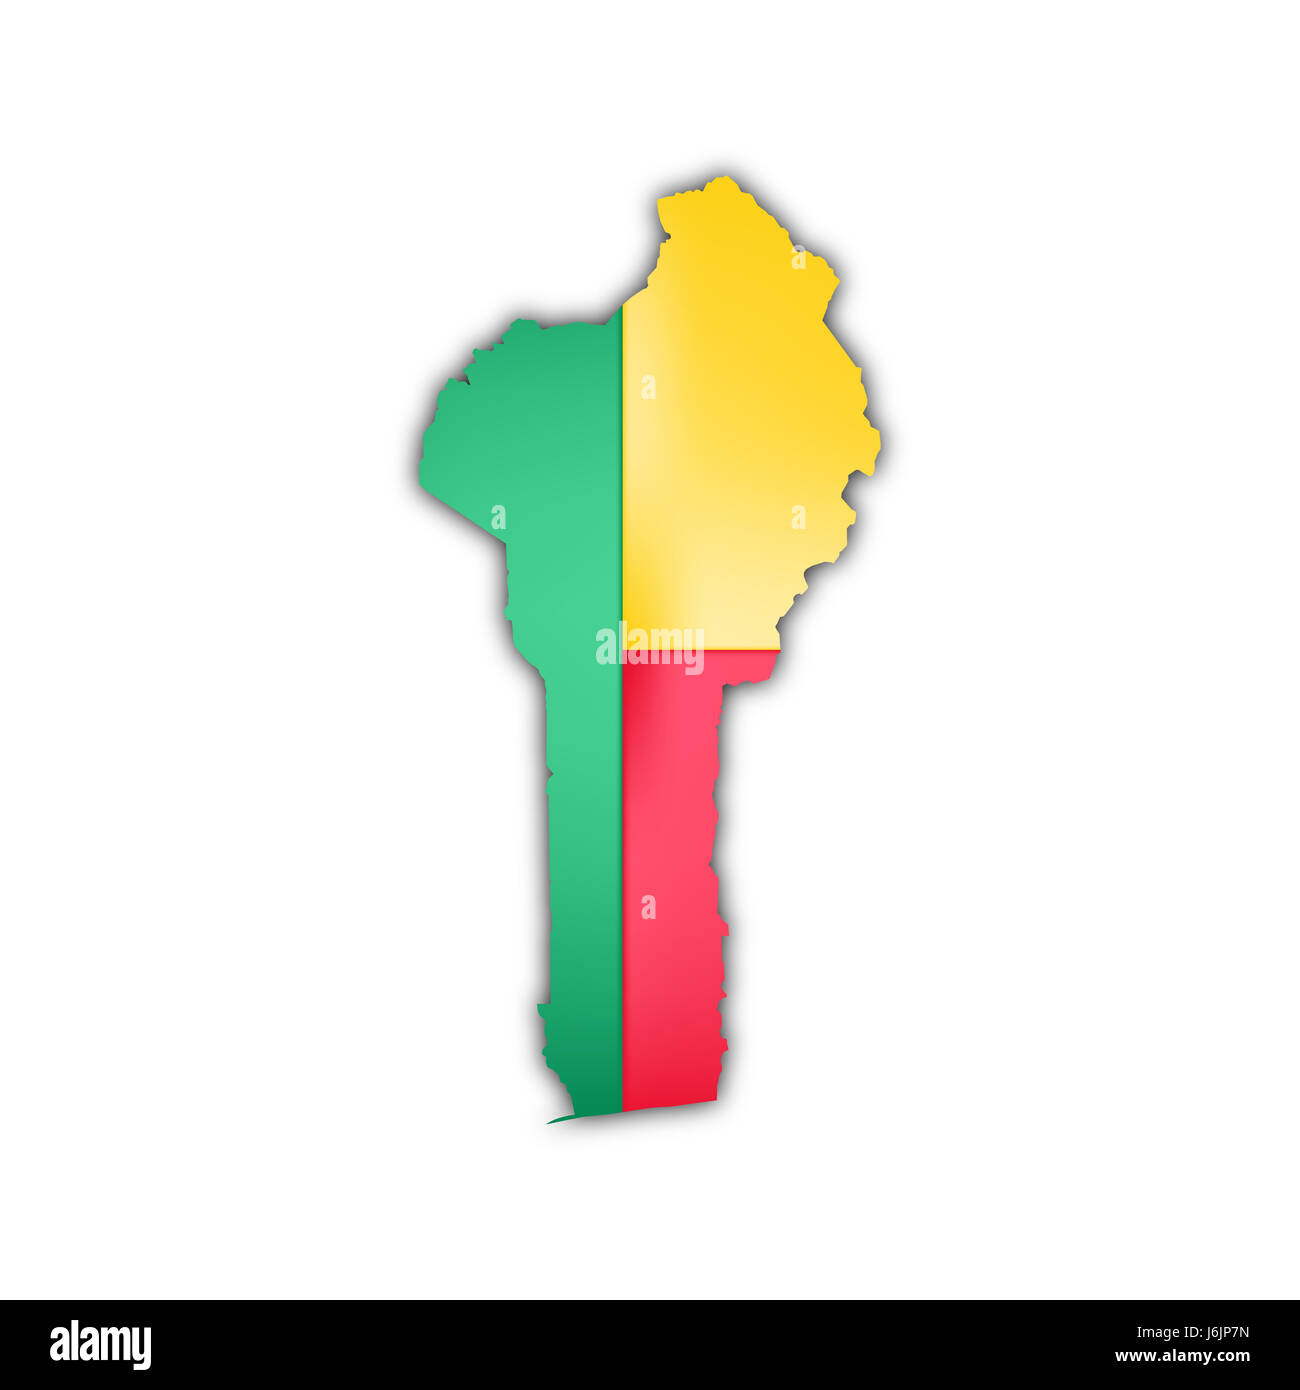 L'Afrique de l'ouest bénin drapeau pays cartographie atlas des cartes carte du monde travel Banque D'Images